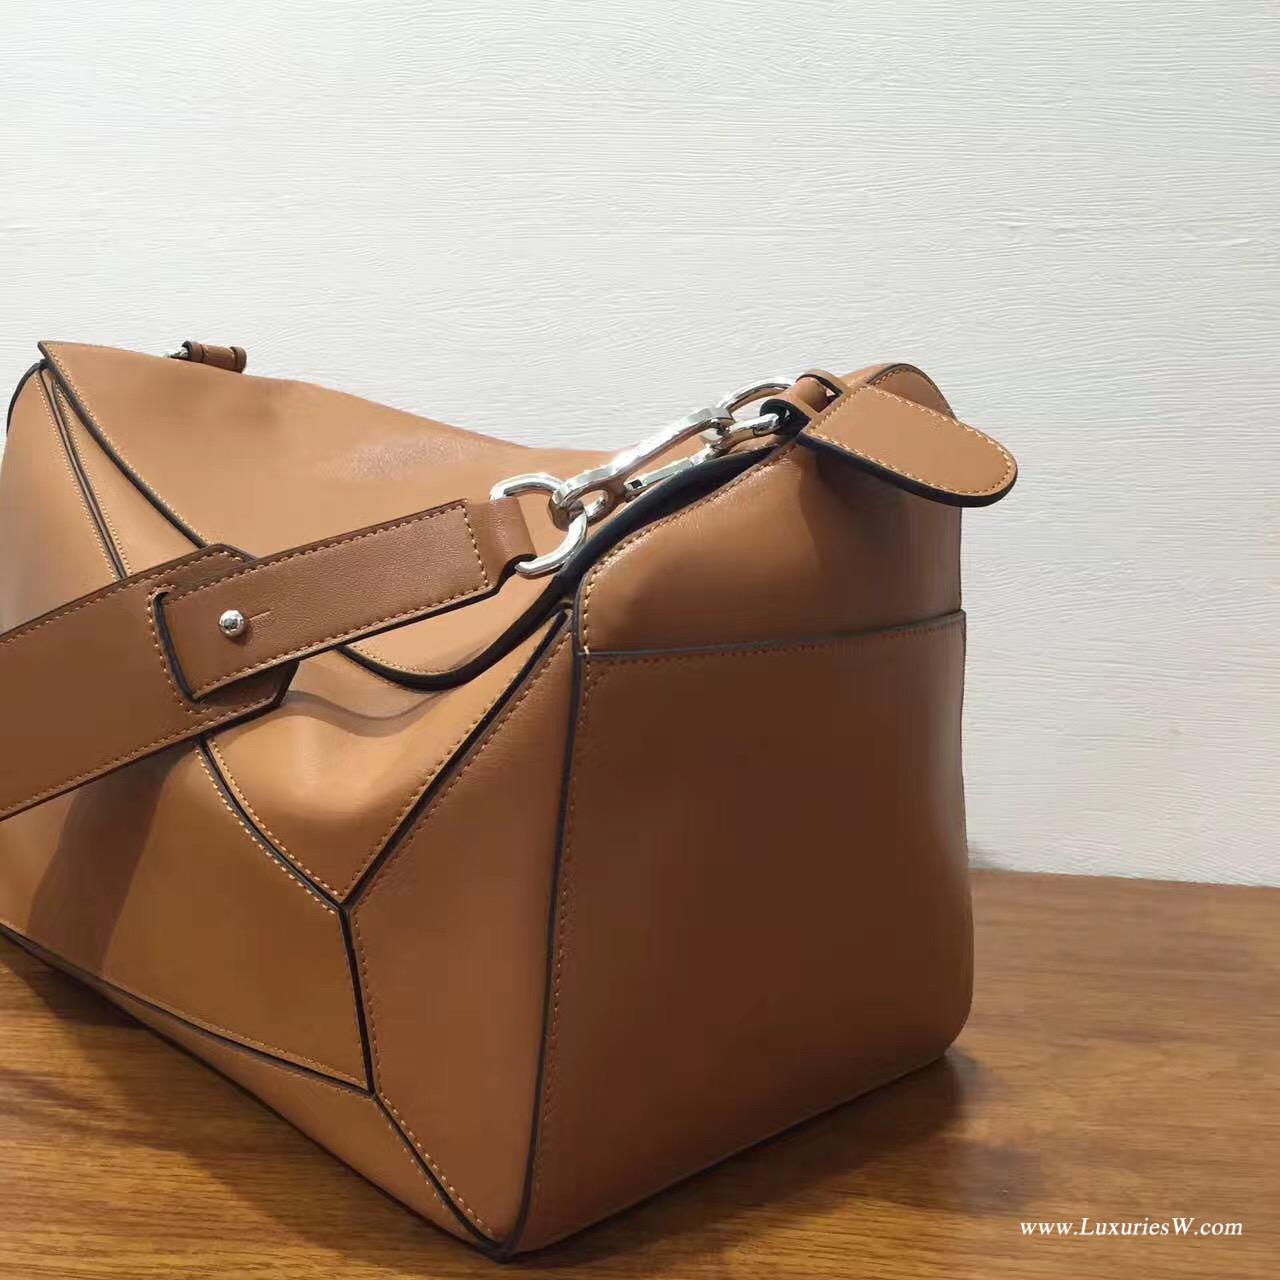 羅意威女包 LOEWE 特大號 Puzzle Bag 棕褐色 38cm長方體形狀 折疊幾何包